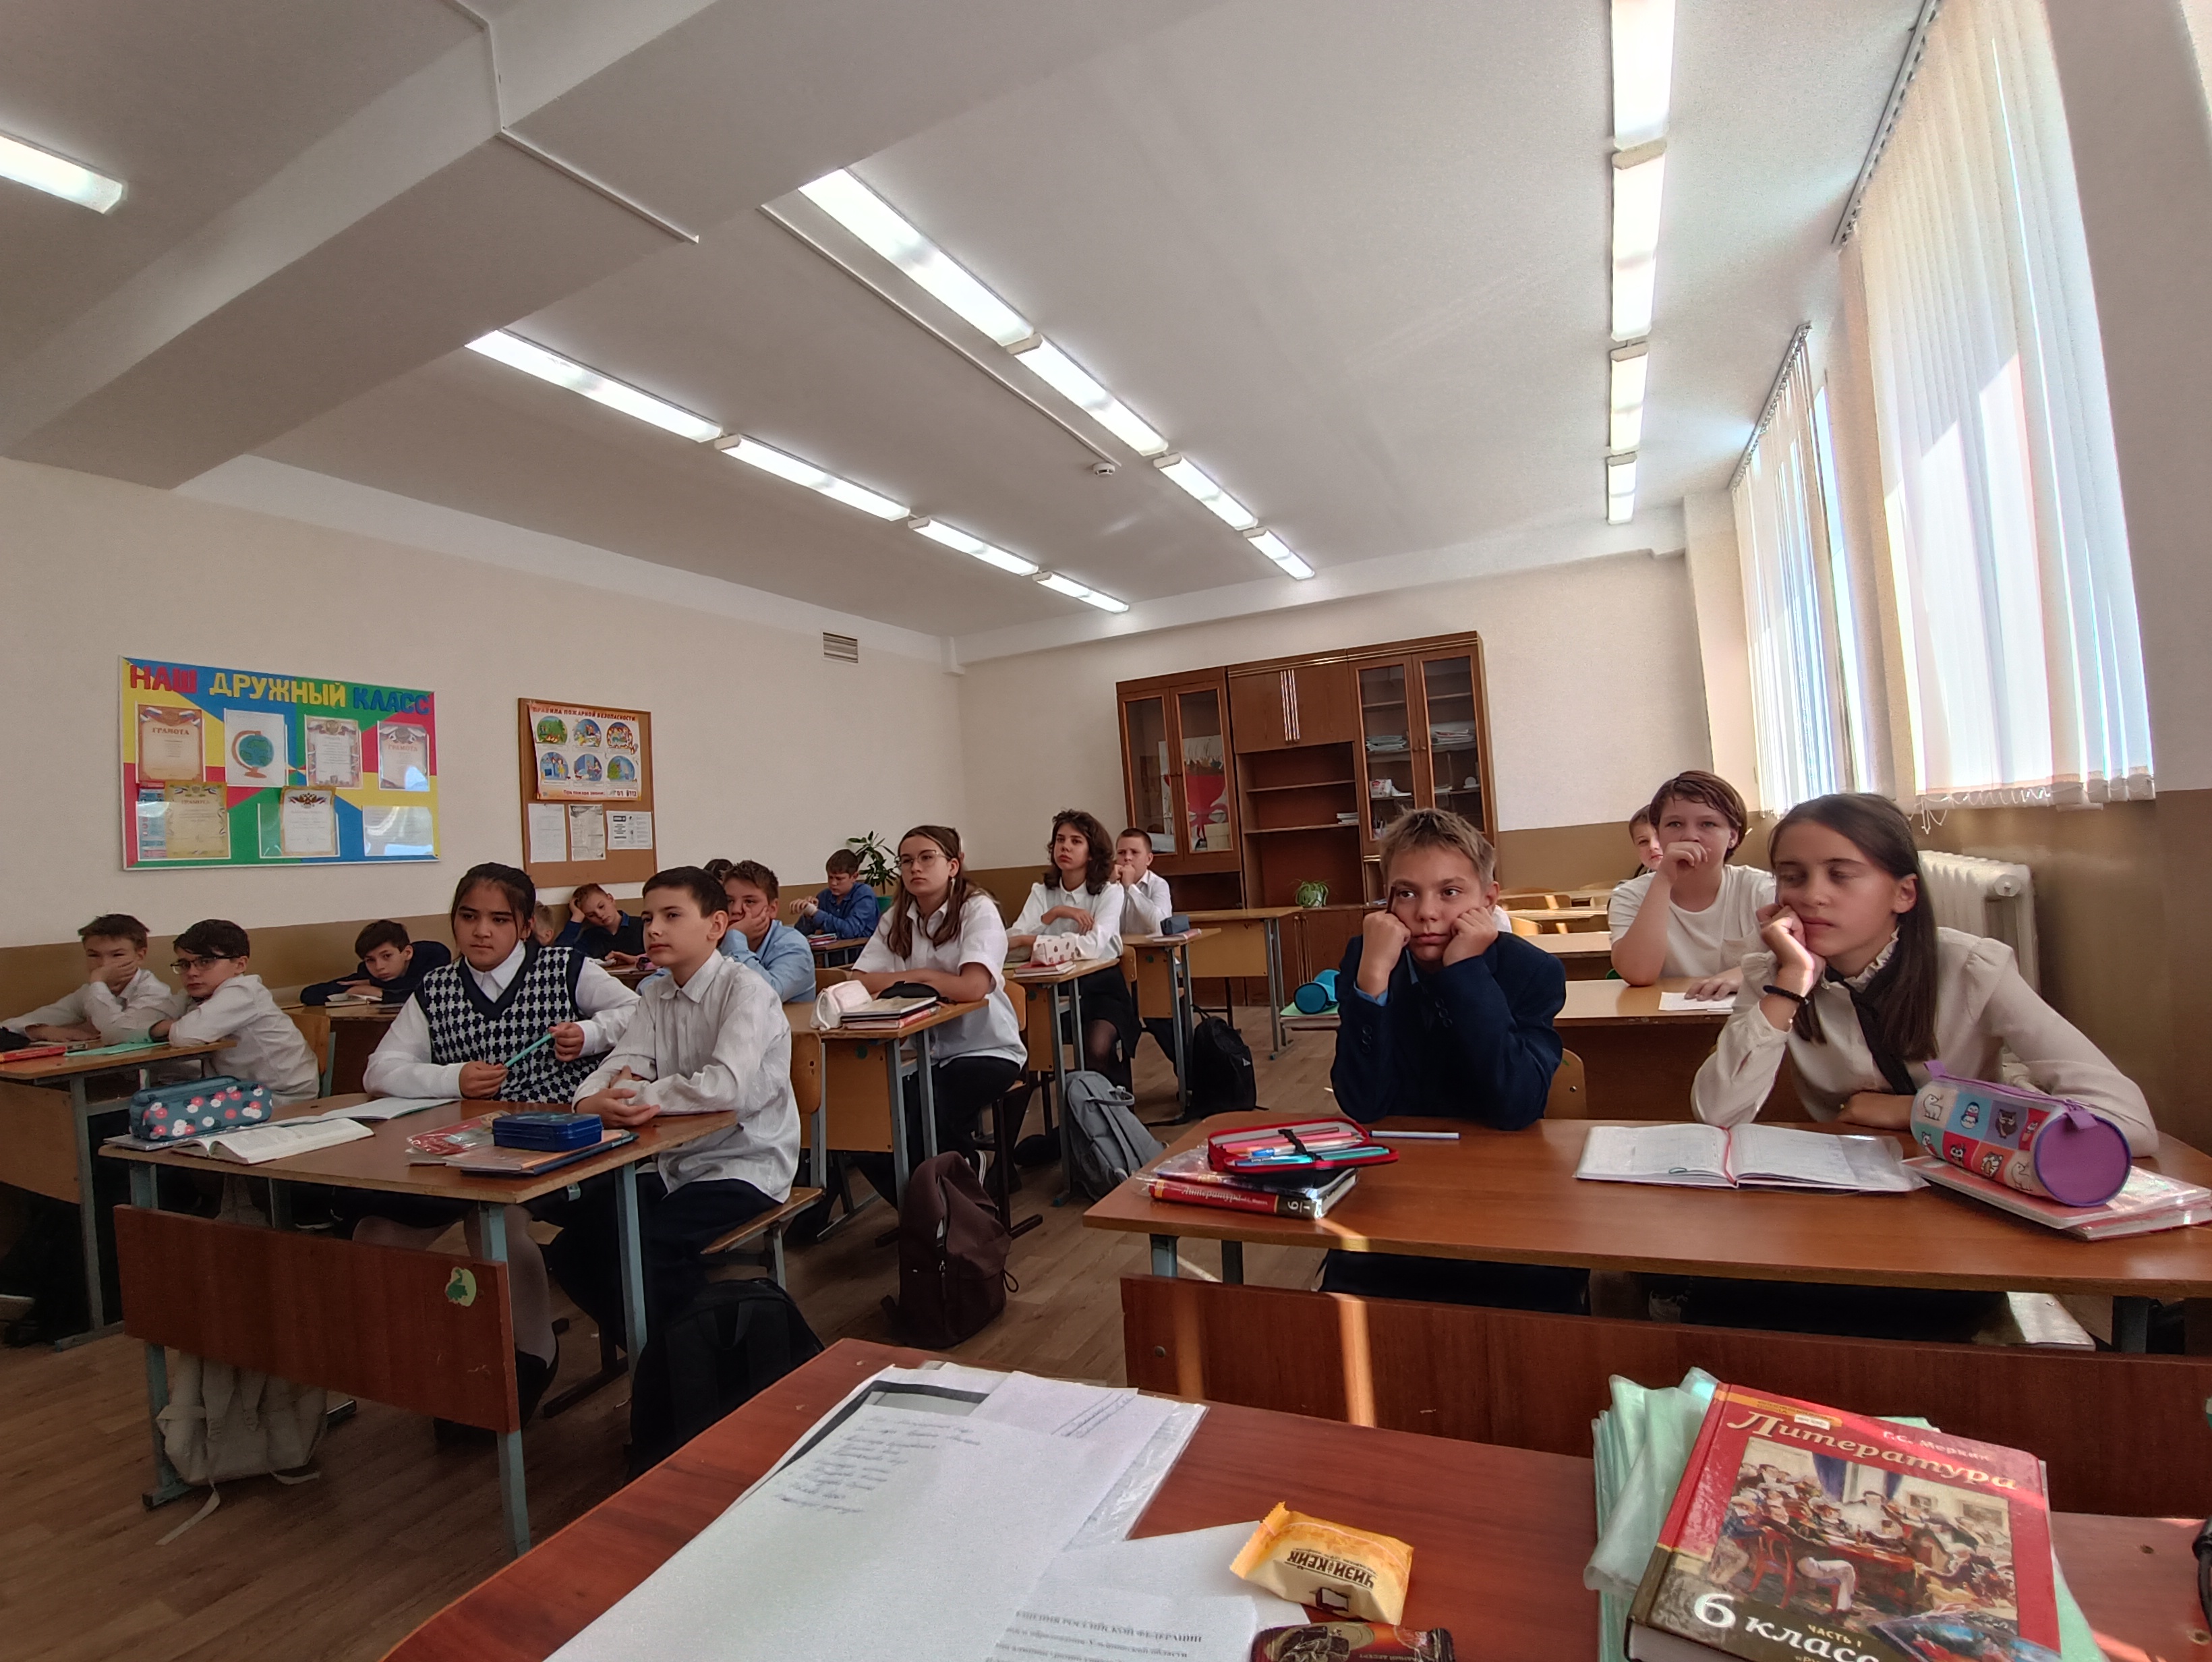 Сегодня в 6Д классе прошёл урок &amp;quot;Поэт аула и планеты&amp;quot;, посвящённый Расулу Гамзатову.